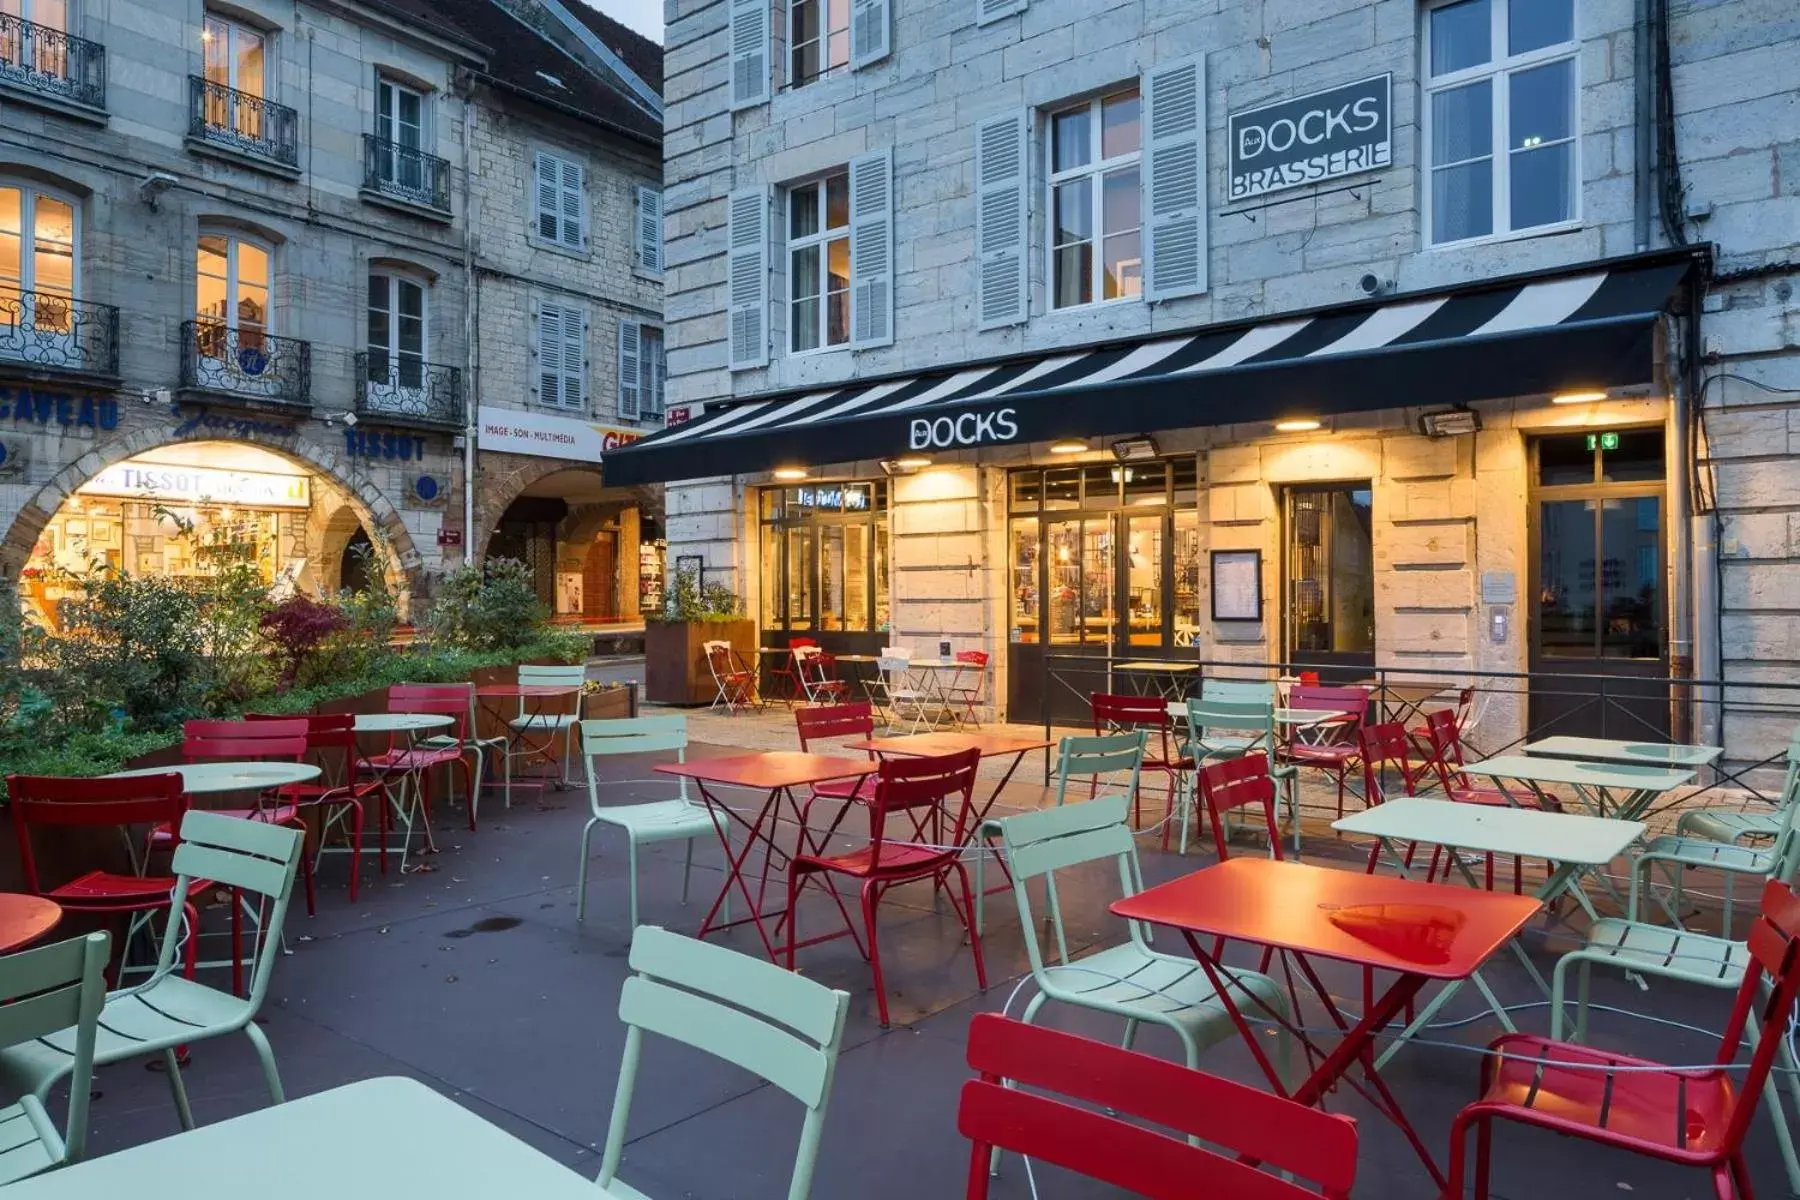 Property building, Restaurant/Places to Eat in Le Comptoir du Voyageur